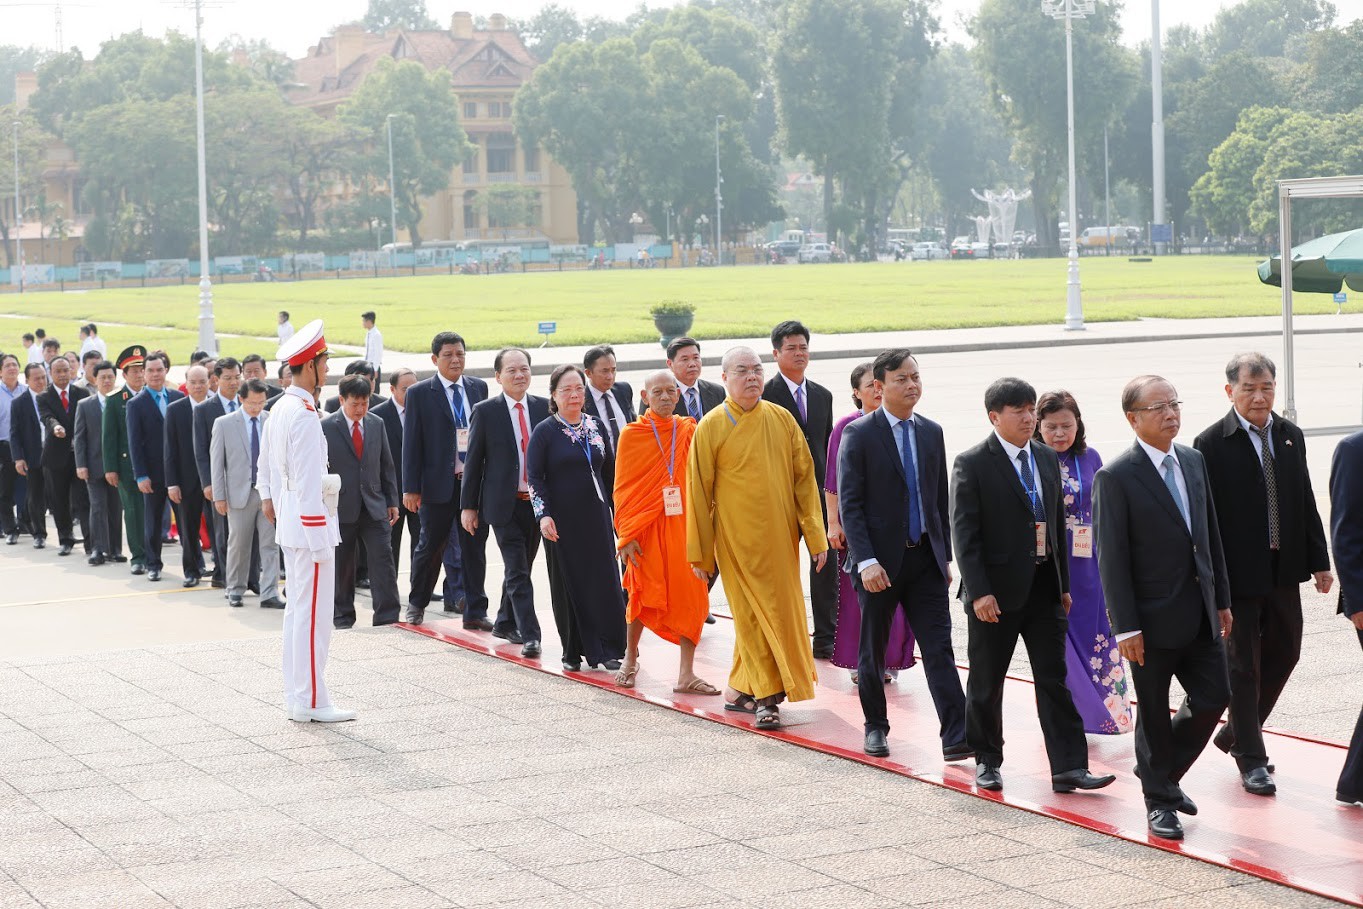 Đại biểu dự Đại hội đại biểu toàn quốc MTTQ Việt Nam viếng Chủ tịch Hồ Chí Minh - Ảnh 5.